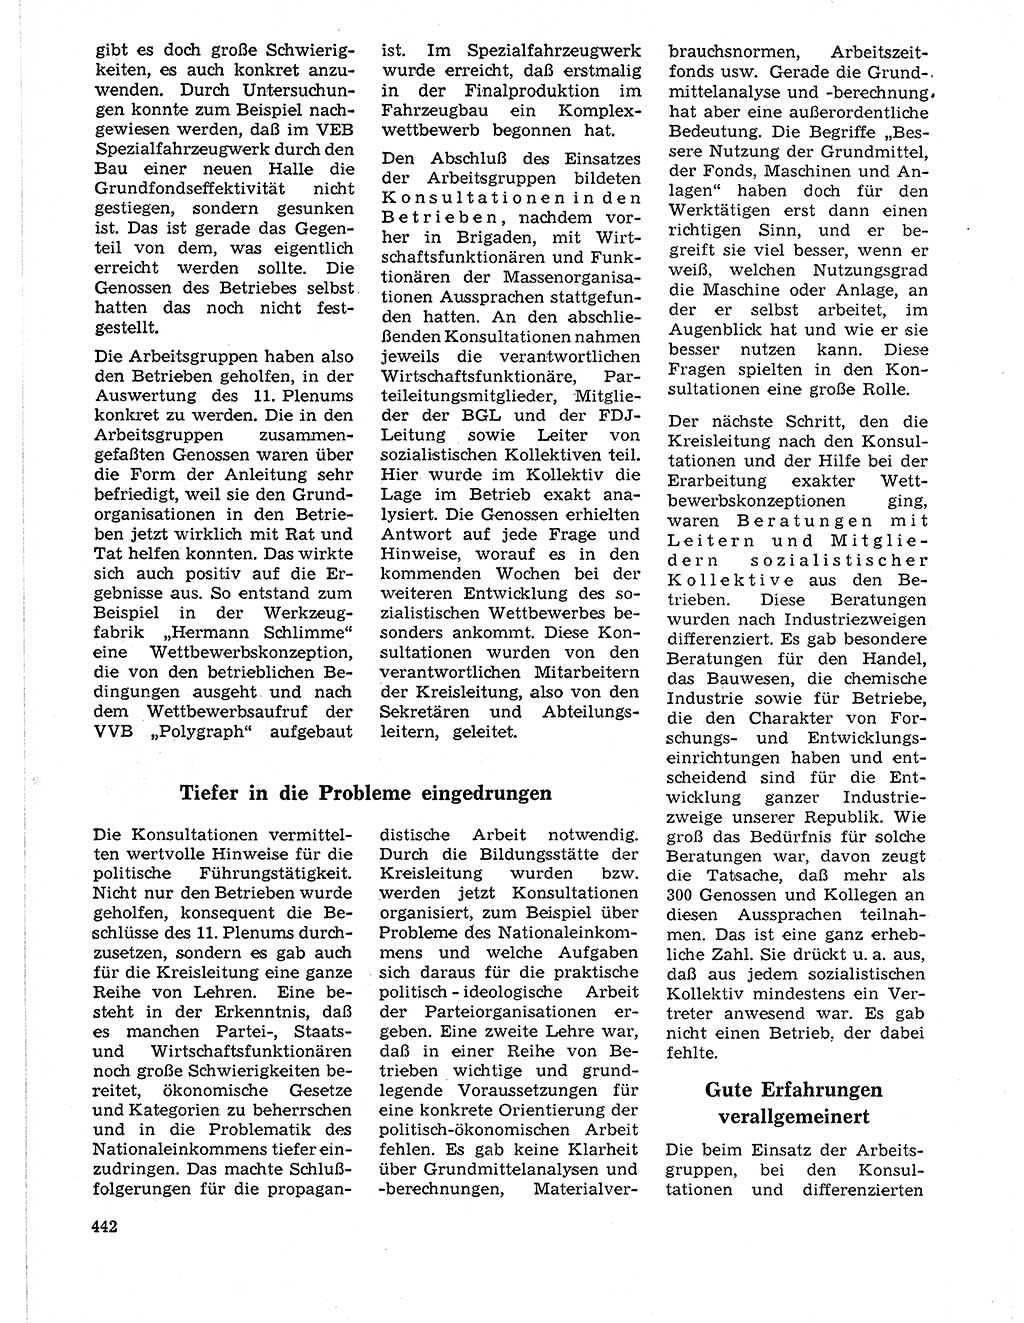 Neuer Weg (NW), Organ des Zentralkomitees (ZK) der SED (Sozialistische Einheitspartei Deutschlands) für Fragen des Parteilebens, 21. Jahrgang [Deutsche Demokratische Republik (DDR)] 1966, Seite 442 (NW ZK SED DDR 1966, S. 442)